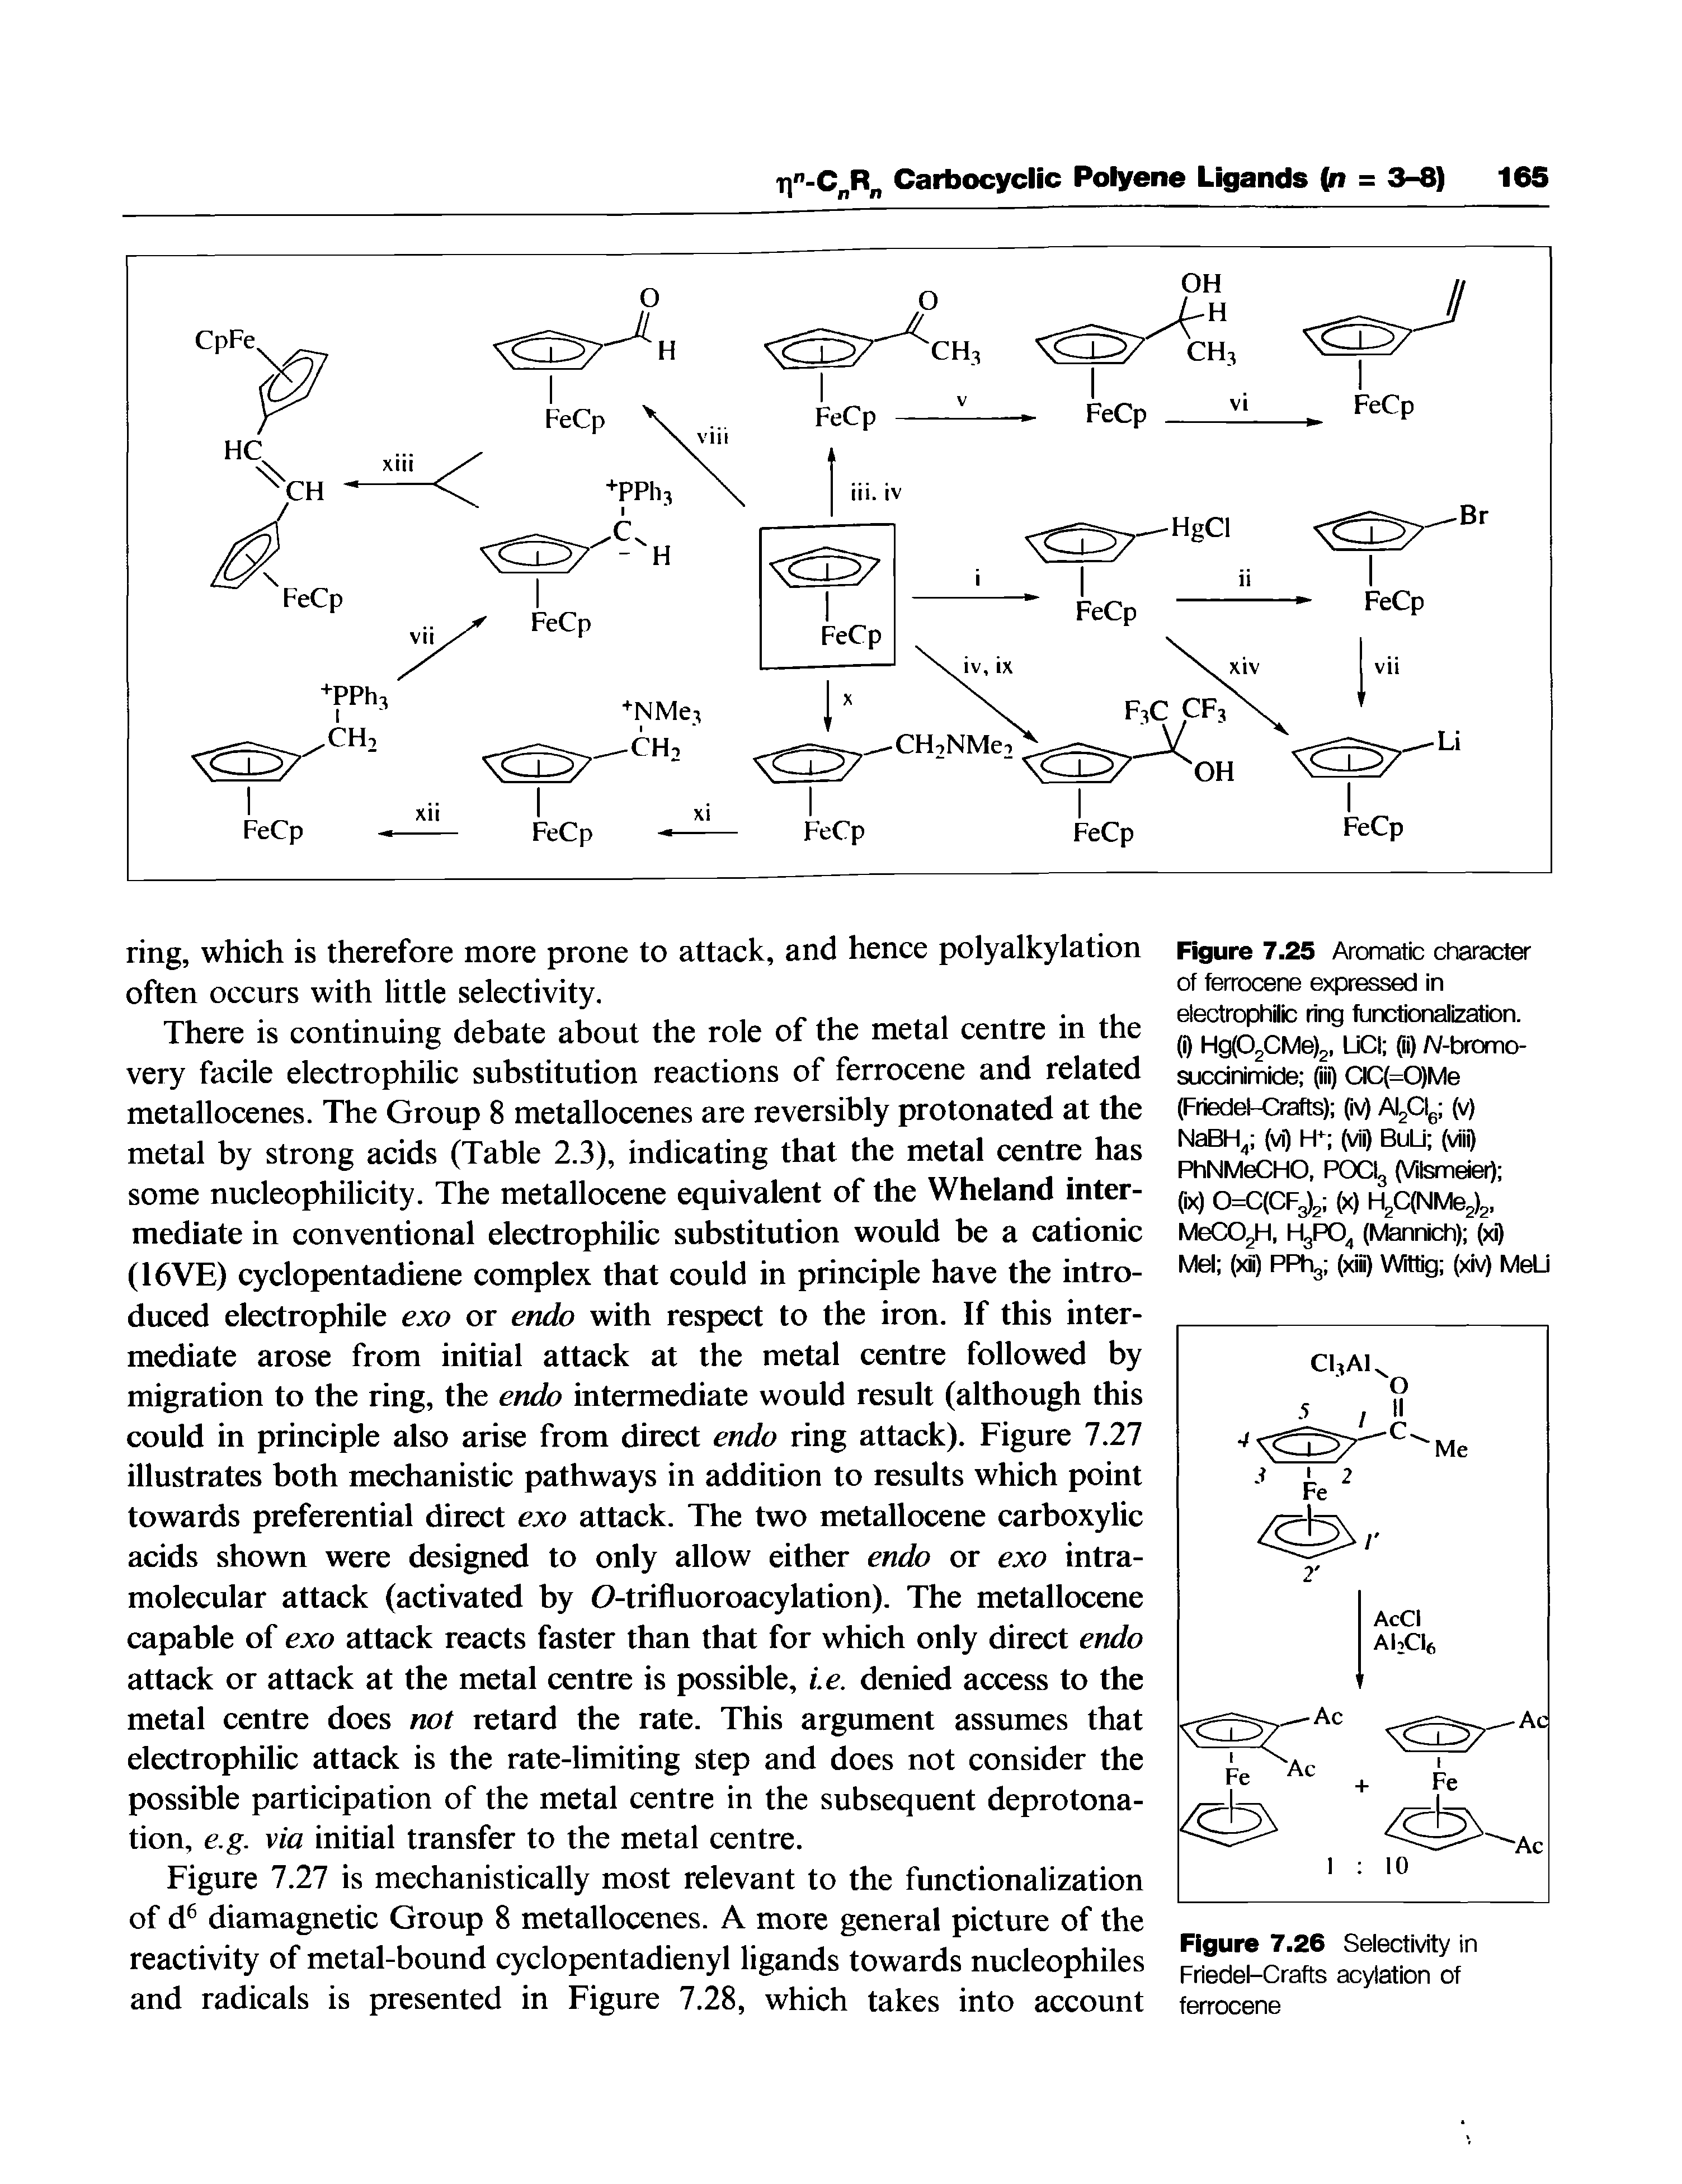 Figure 7.26 Selectivity in Friedel-Crafts acylation of ferrocene...